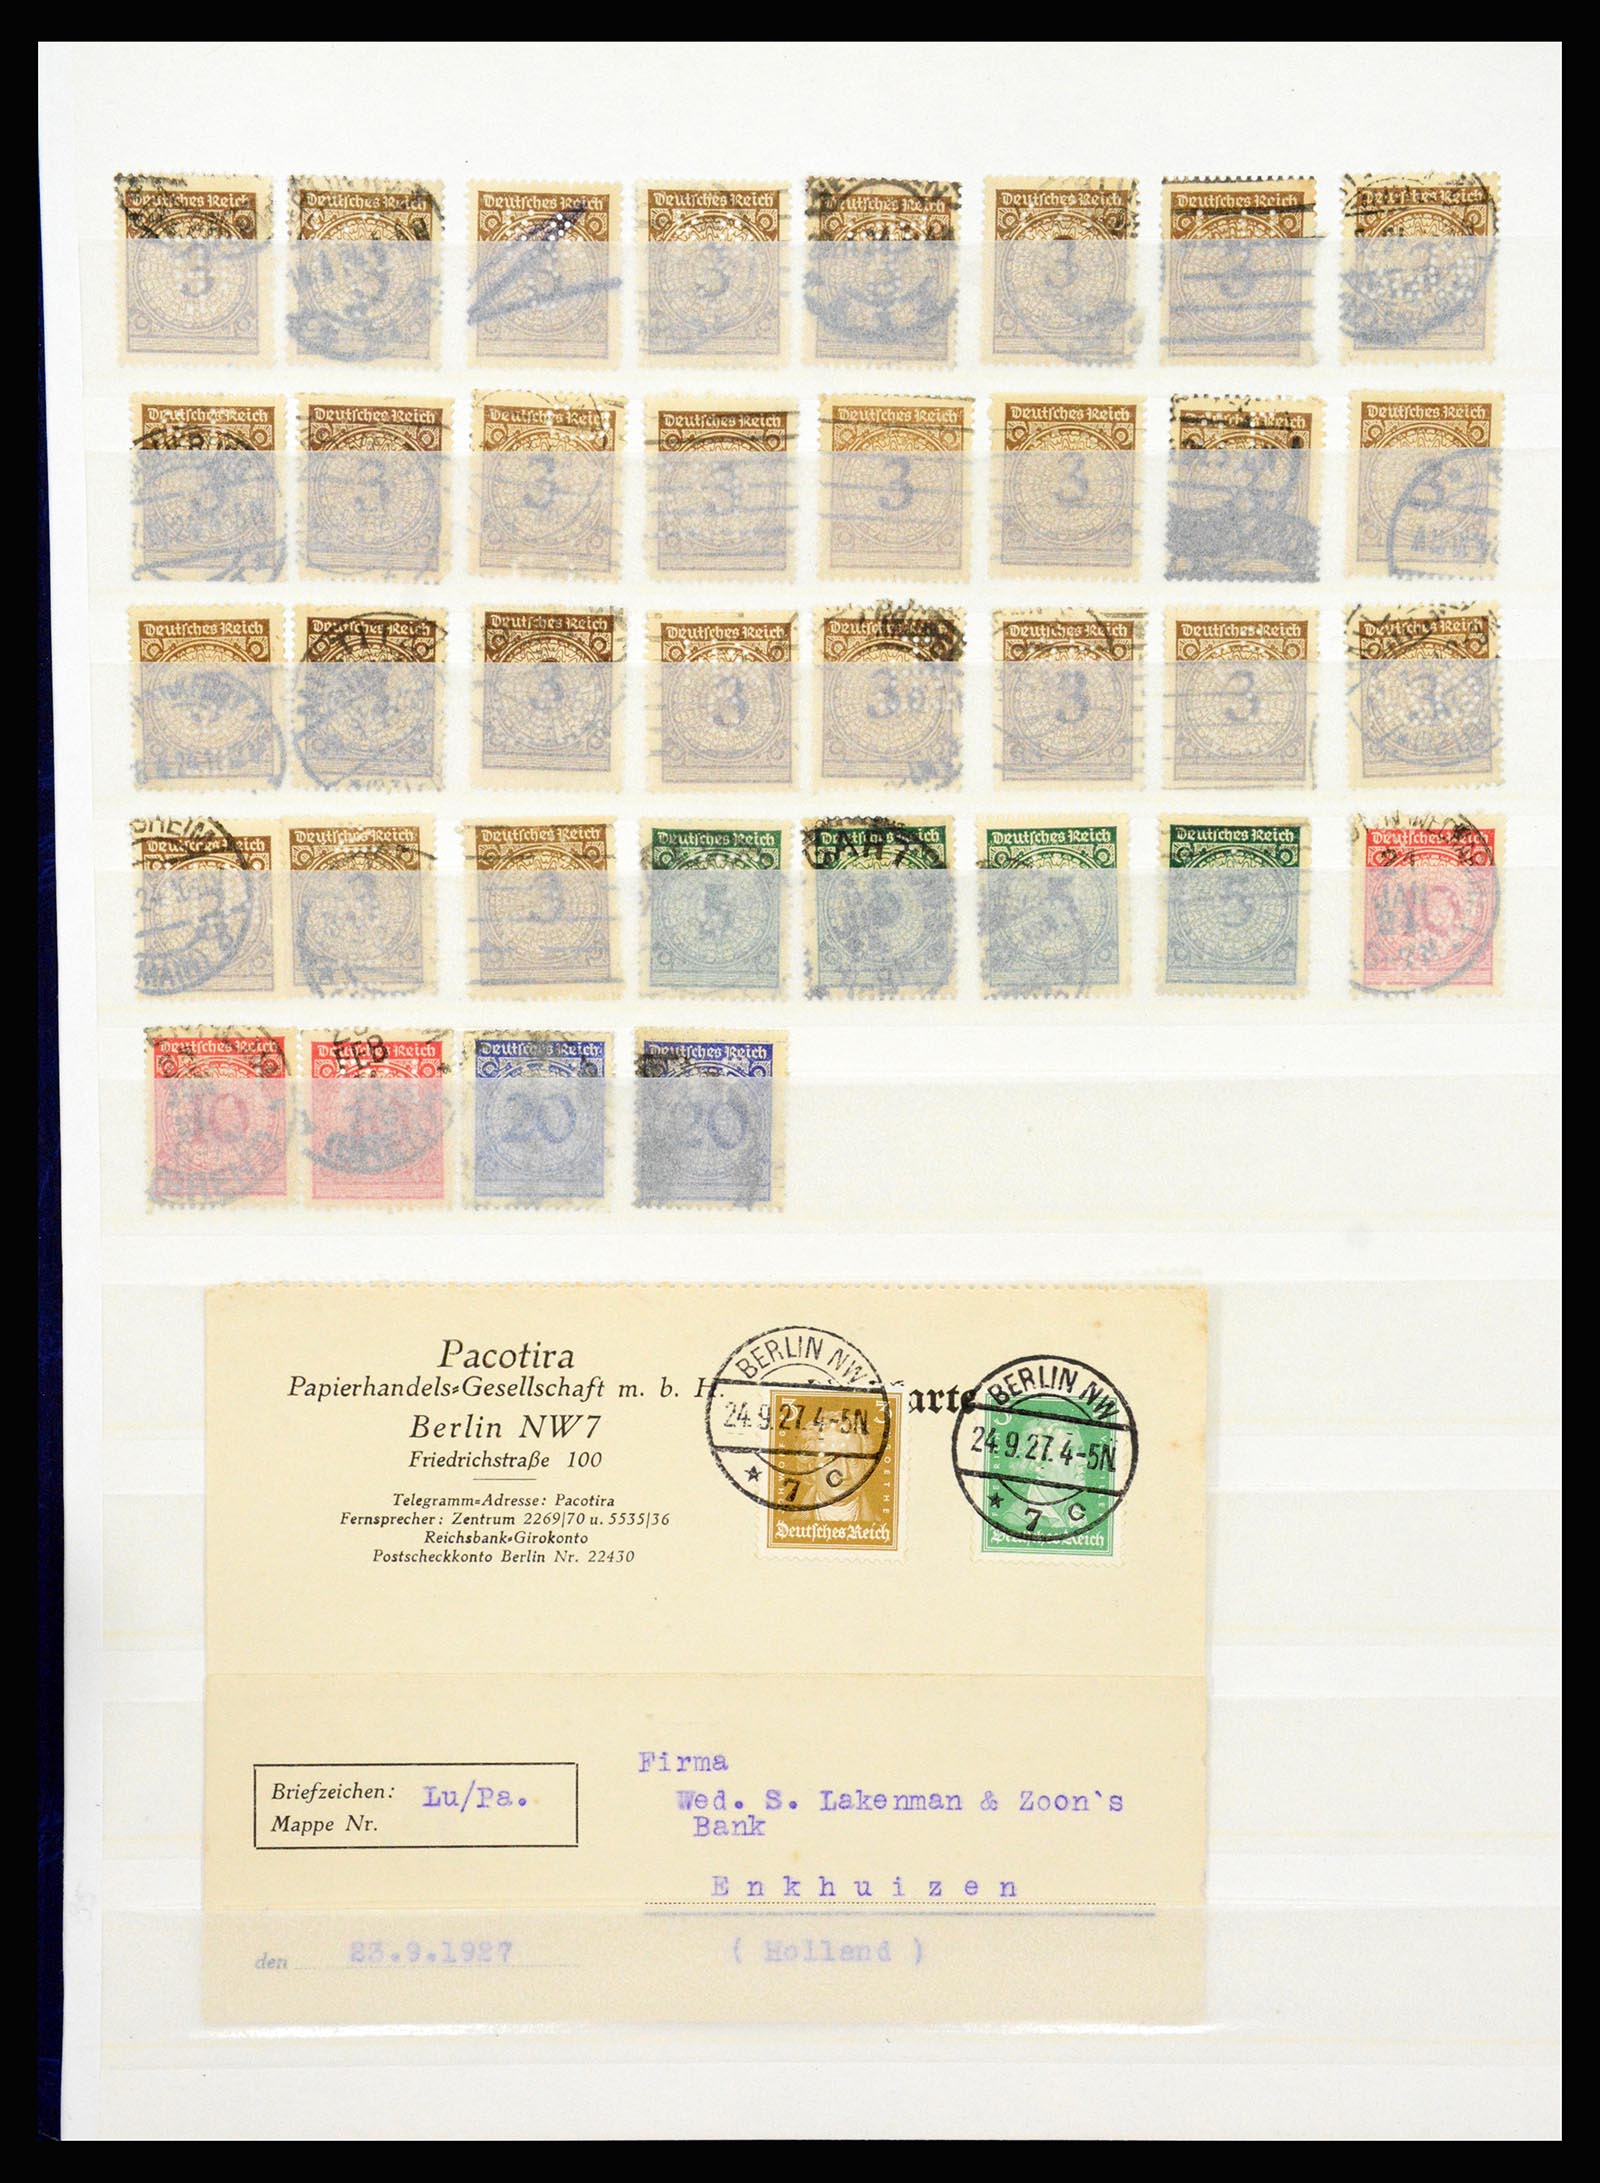 37254 002 - Stamp collection 37254 German Reich perfins 1900-1945.